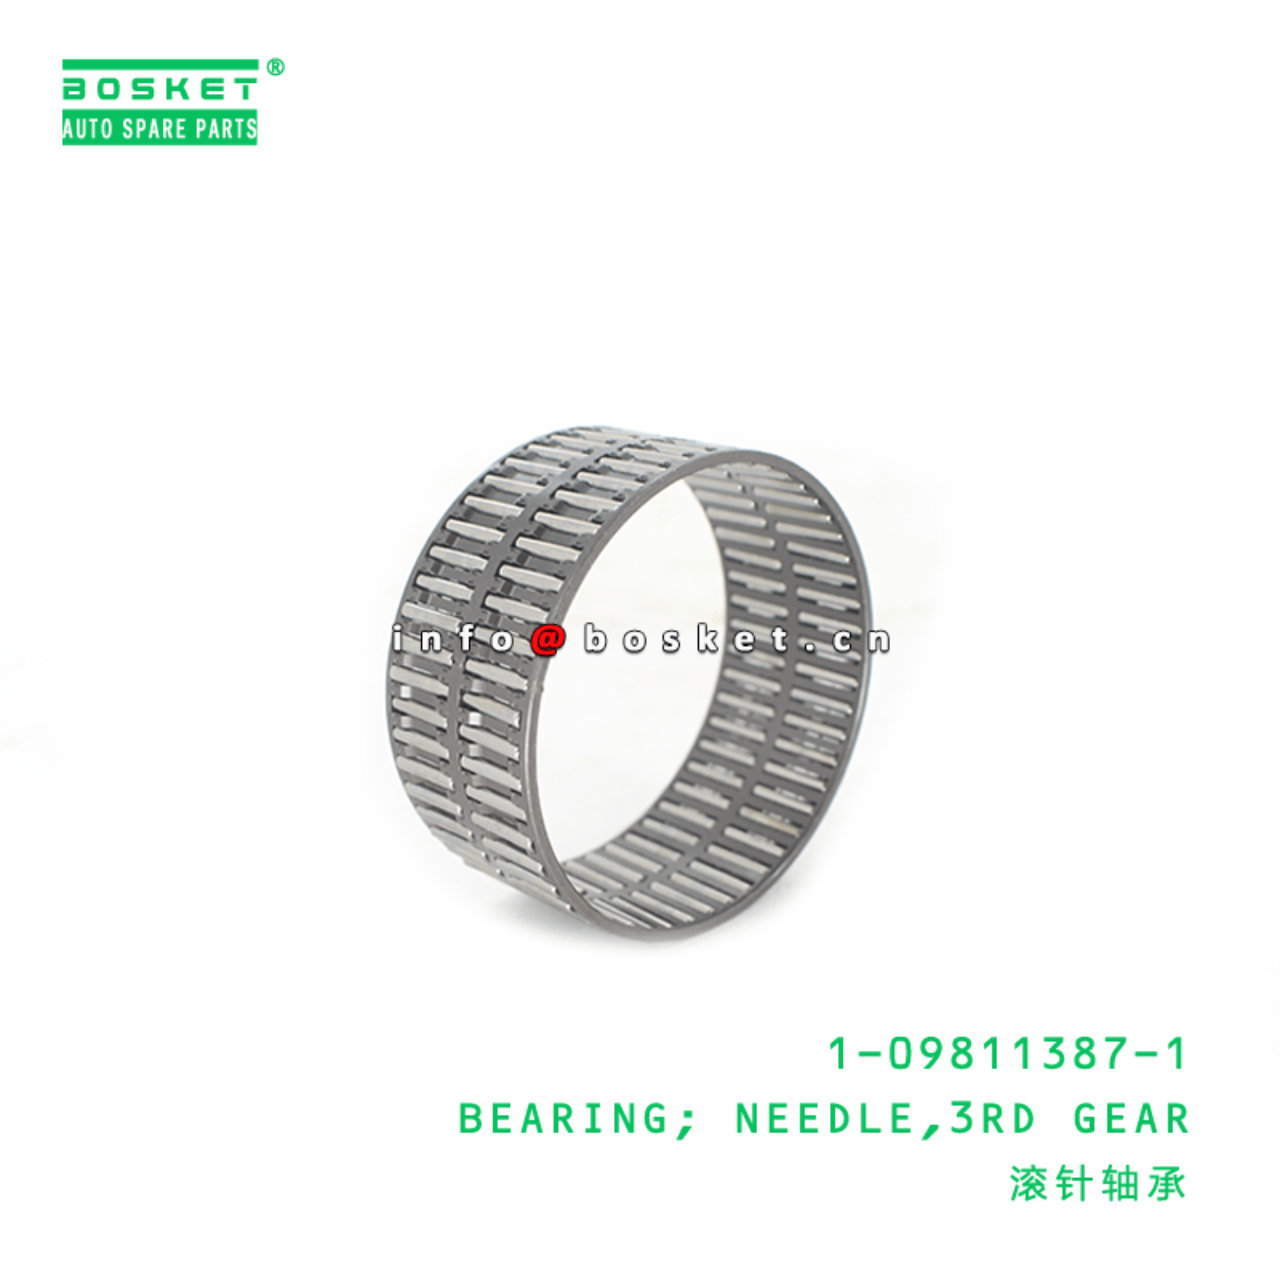 1-09811387-1 Third Gear Needle Bearing 1098113871 Suitable for ISUZU FRR FSR FTR